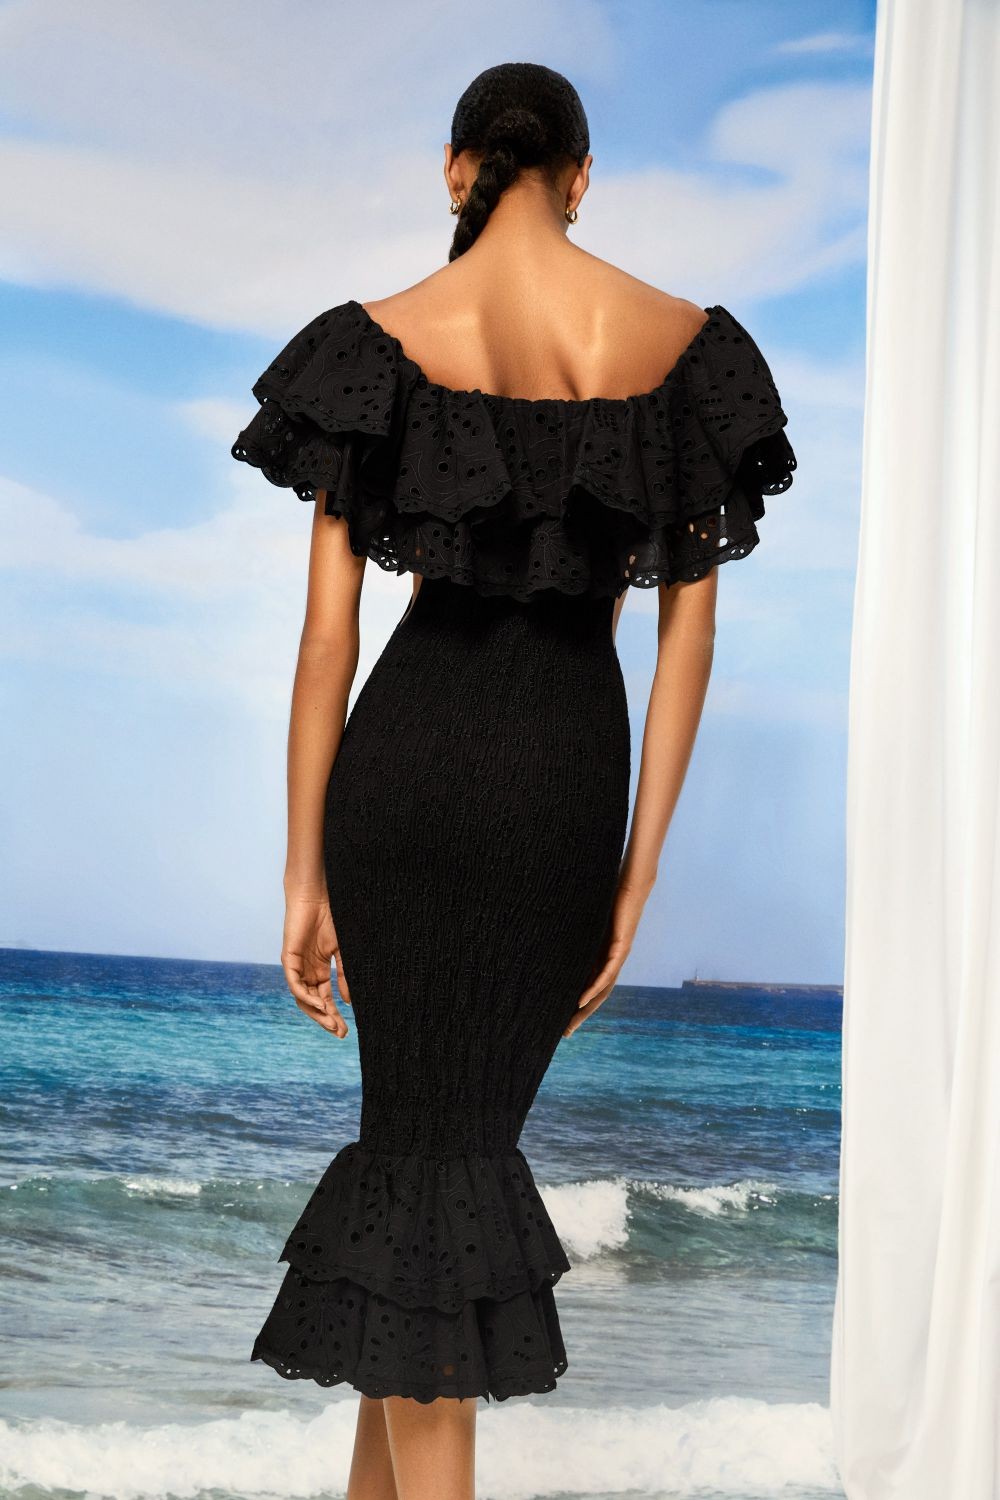 Charo Ruiz Long Dress Luisa - Premium Long dress from Marina St Barth - Just $999.00! Shop now at Marina St Barth